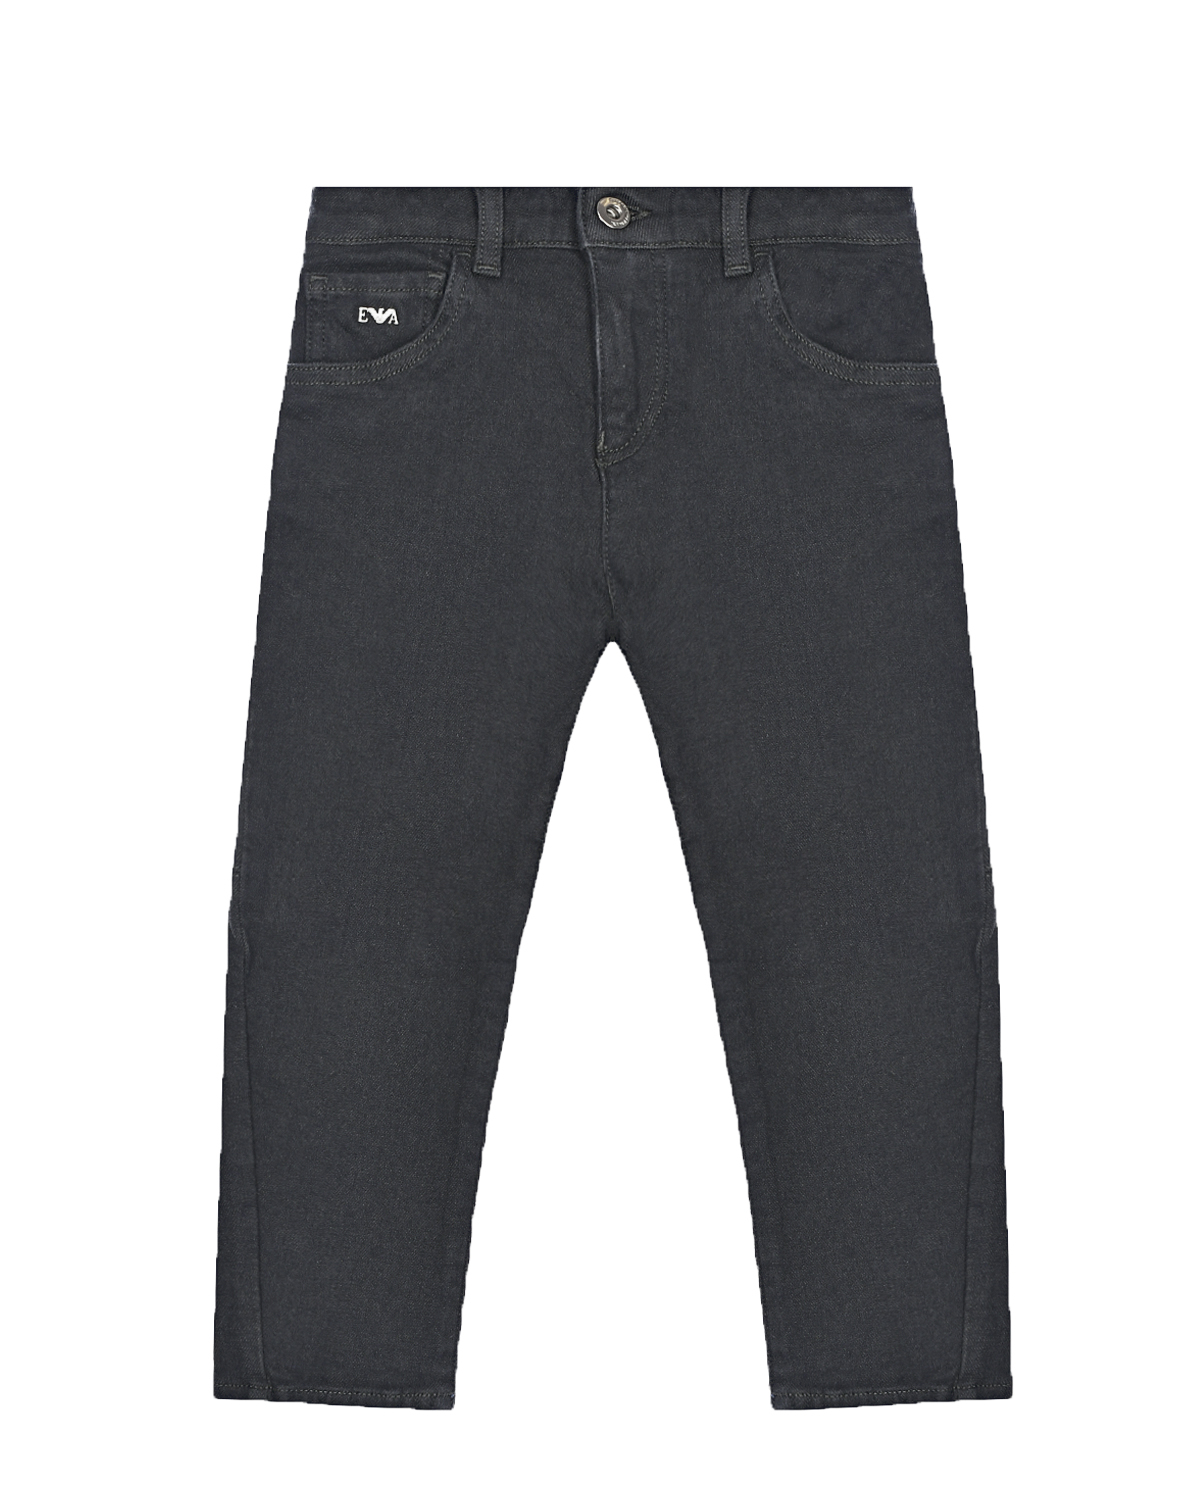 Утепленные джинсы Emporio Armani детские, размер 104, цвет серый